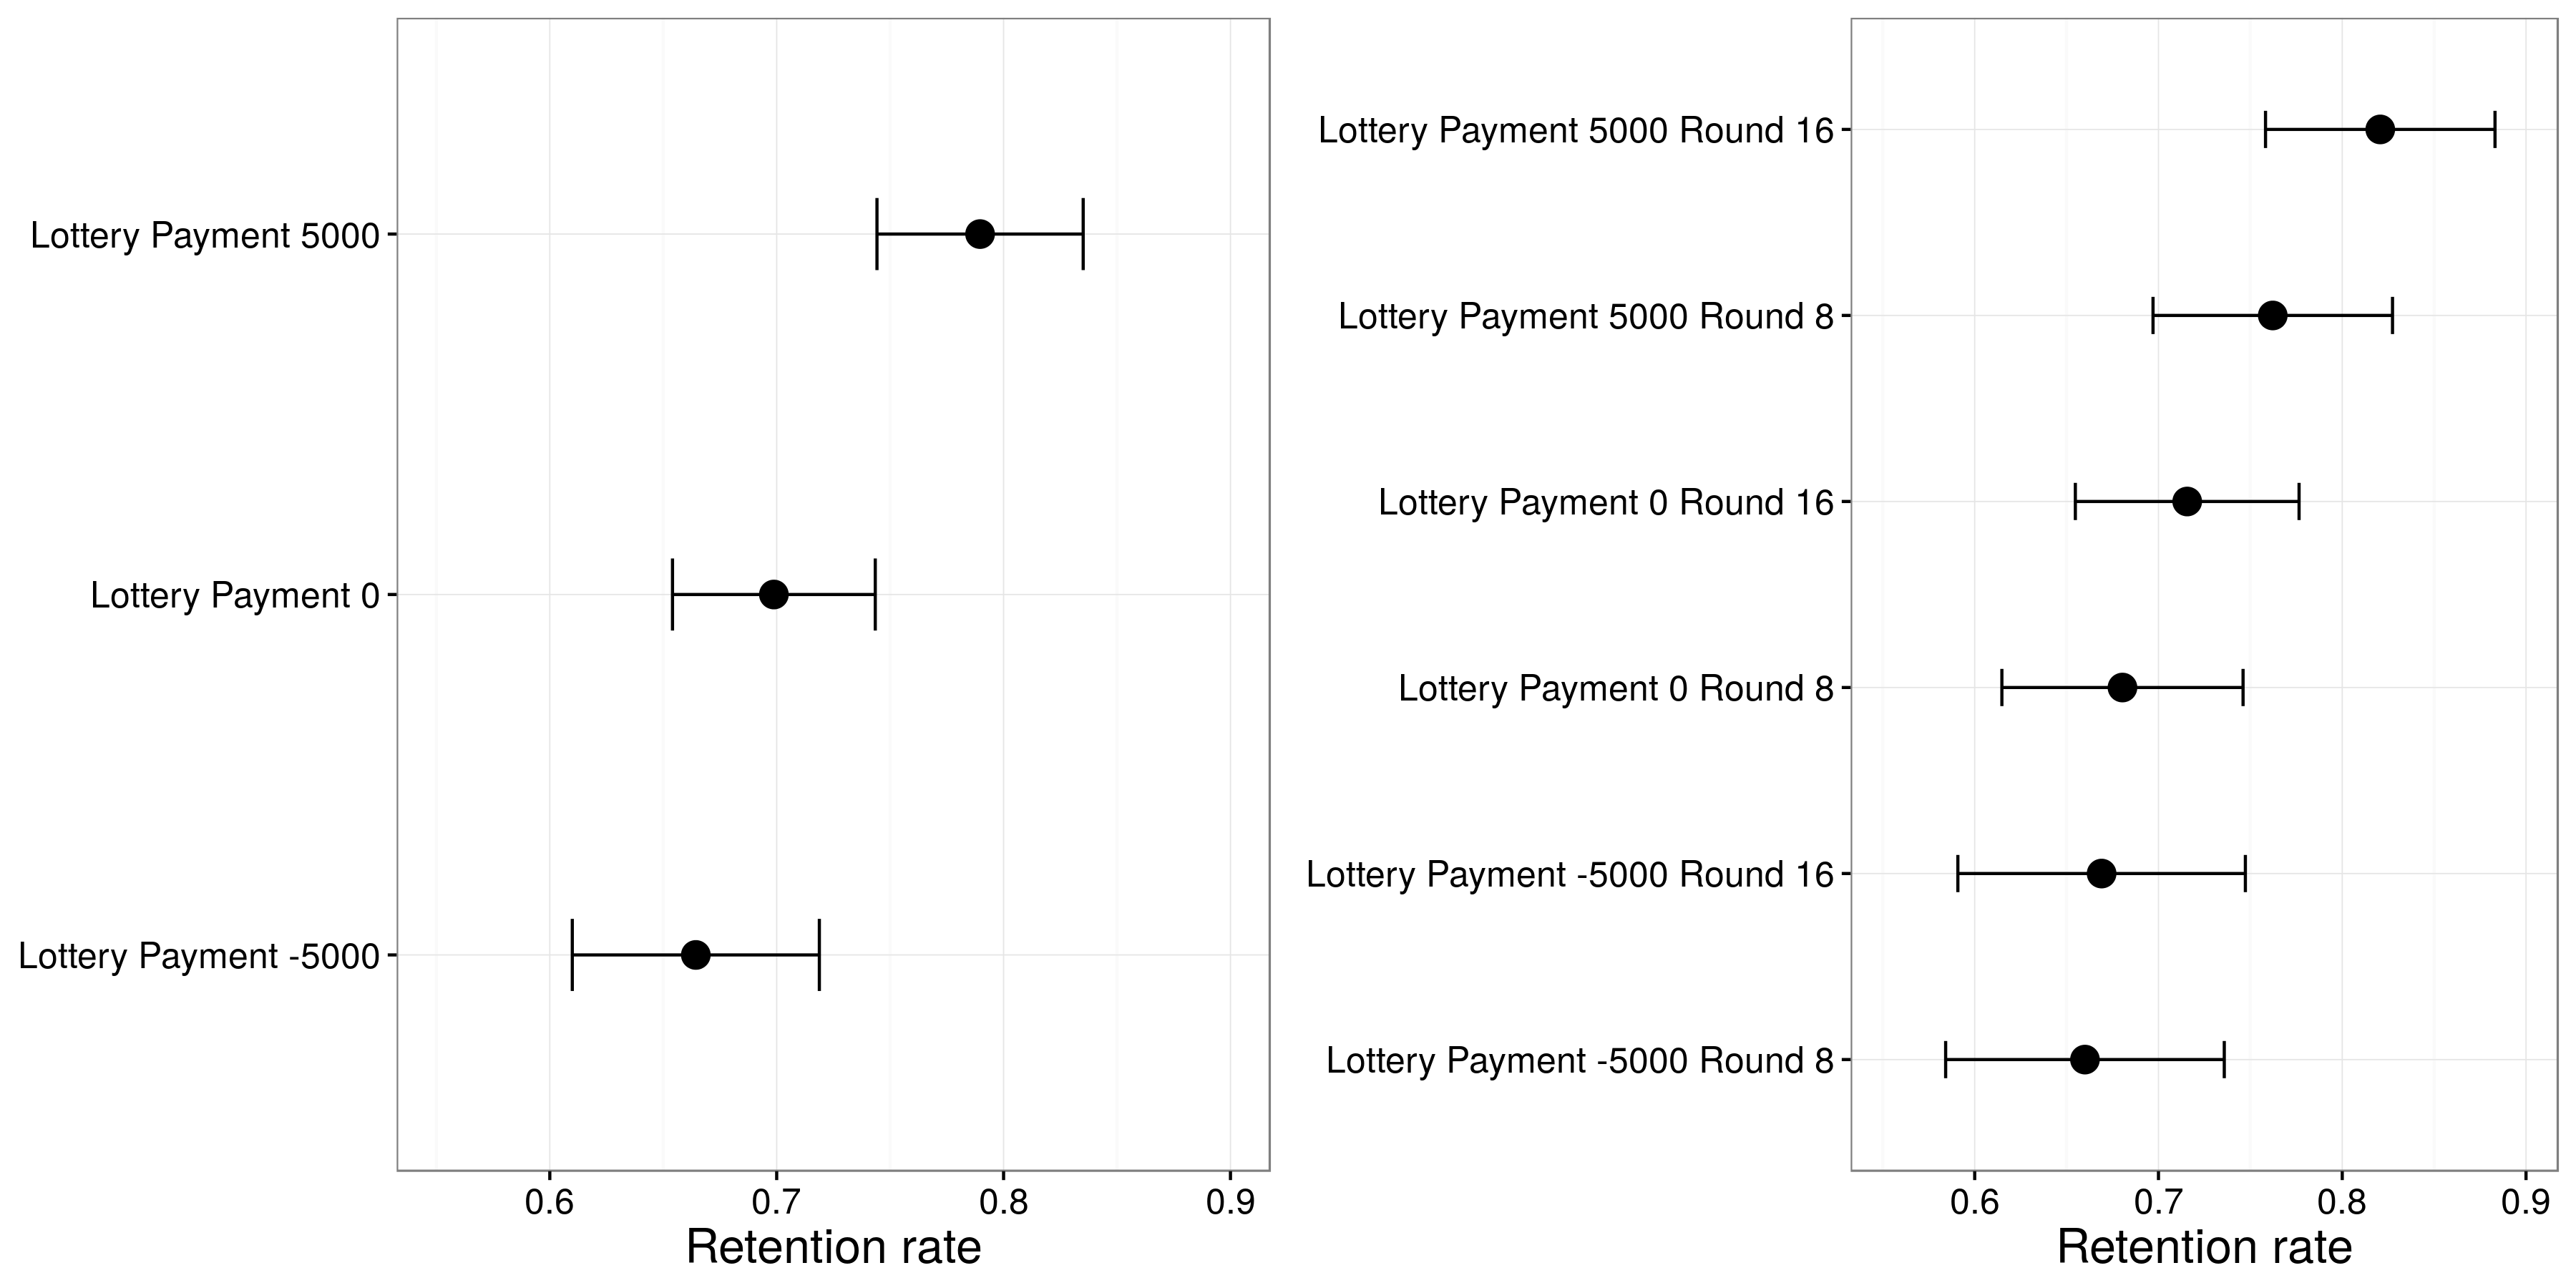 ပုံ 4,15: Huber, ဟေးလ်နှင့် Lenz ထံမှရလဒ်များ (2012) ။ အဆိုပါထီမှအကြိုးတဲ့သူသင်တန်းသားများကို၎င်းတို့၏ခွဲဝေထိန်းသိမ်းထားဖို့ပိုဖွယ်ရှိခဲ့ကြသည်, ထိုထီအစားထိုးဆုံးဖြတ်ချက်-ထက်က Huber, ဟေးလ်နှင့် Lenz (ထံမှ Adapted ပတ်ပတ်လည် 8. အတွက်ဖြစ်ပျက်သည့်အခါမရောက်မီပတ်ပတ်လည် 16-ညာဘက်မှာရှိတဲ့ဖြစ်ပျက်သည့်အခါဤအကြိုးသကျရောအားကောင်းခဲ့သည် 2012), ပုံ 5 ။